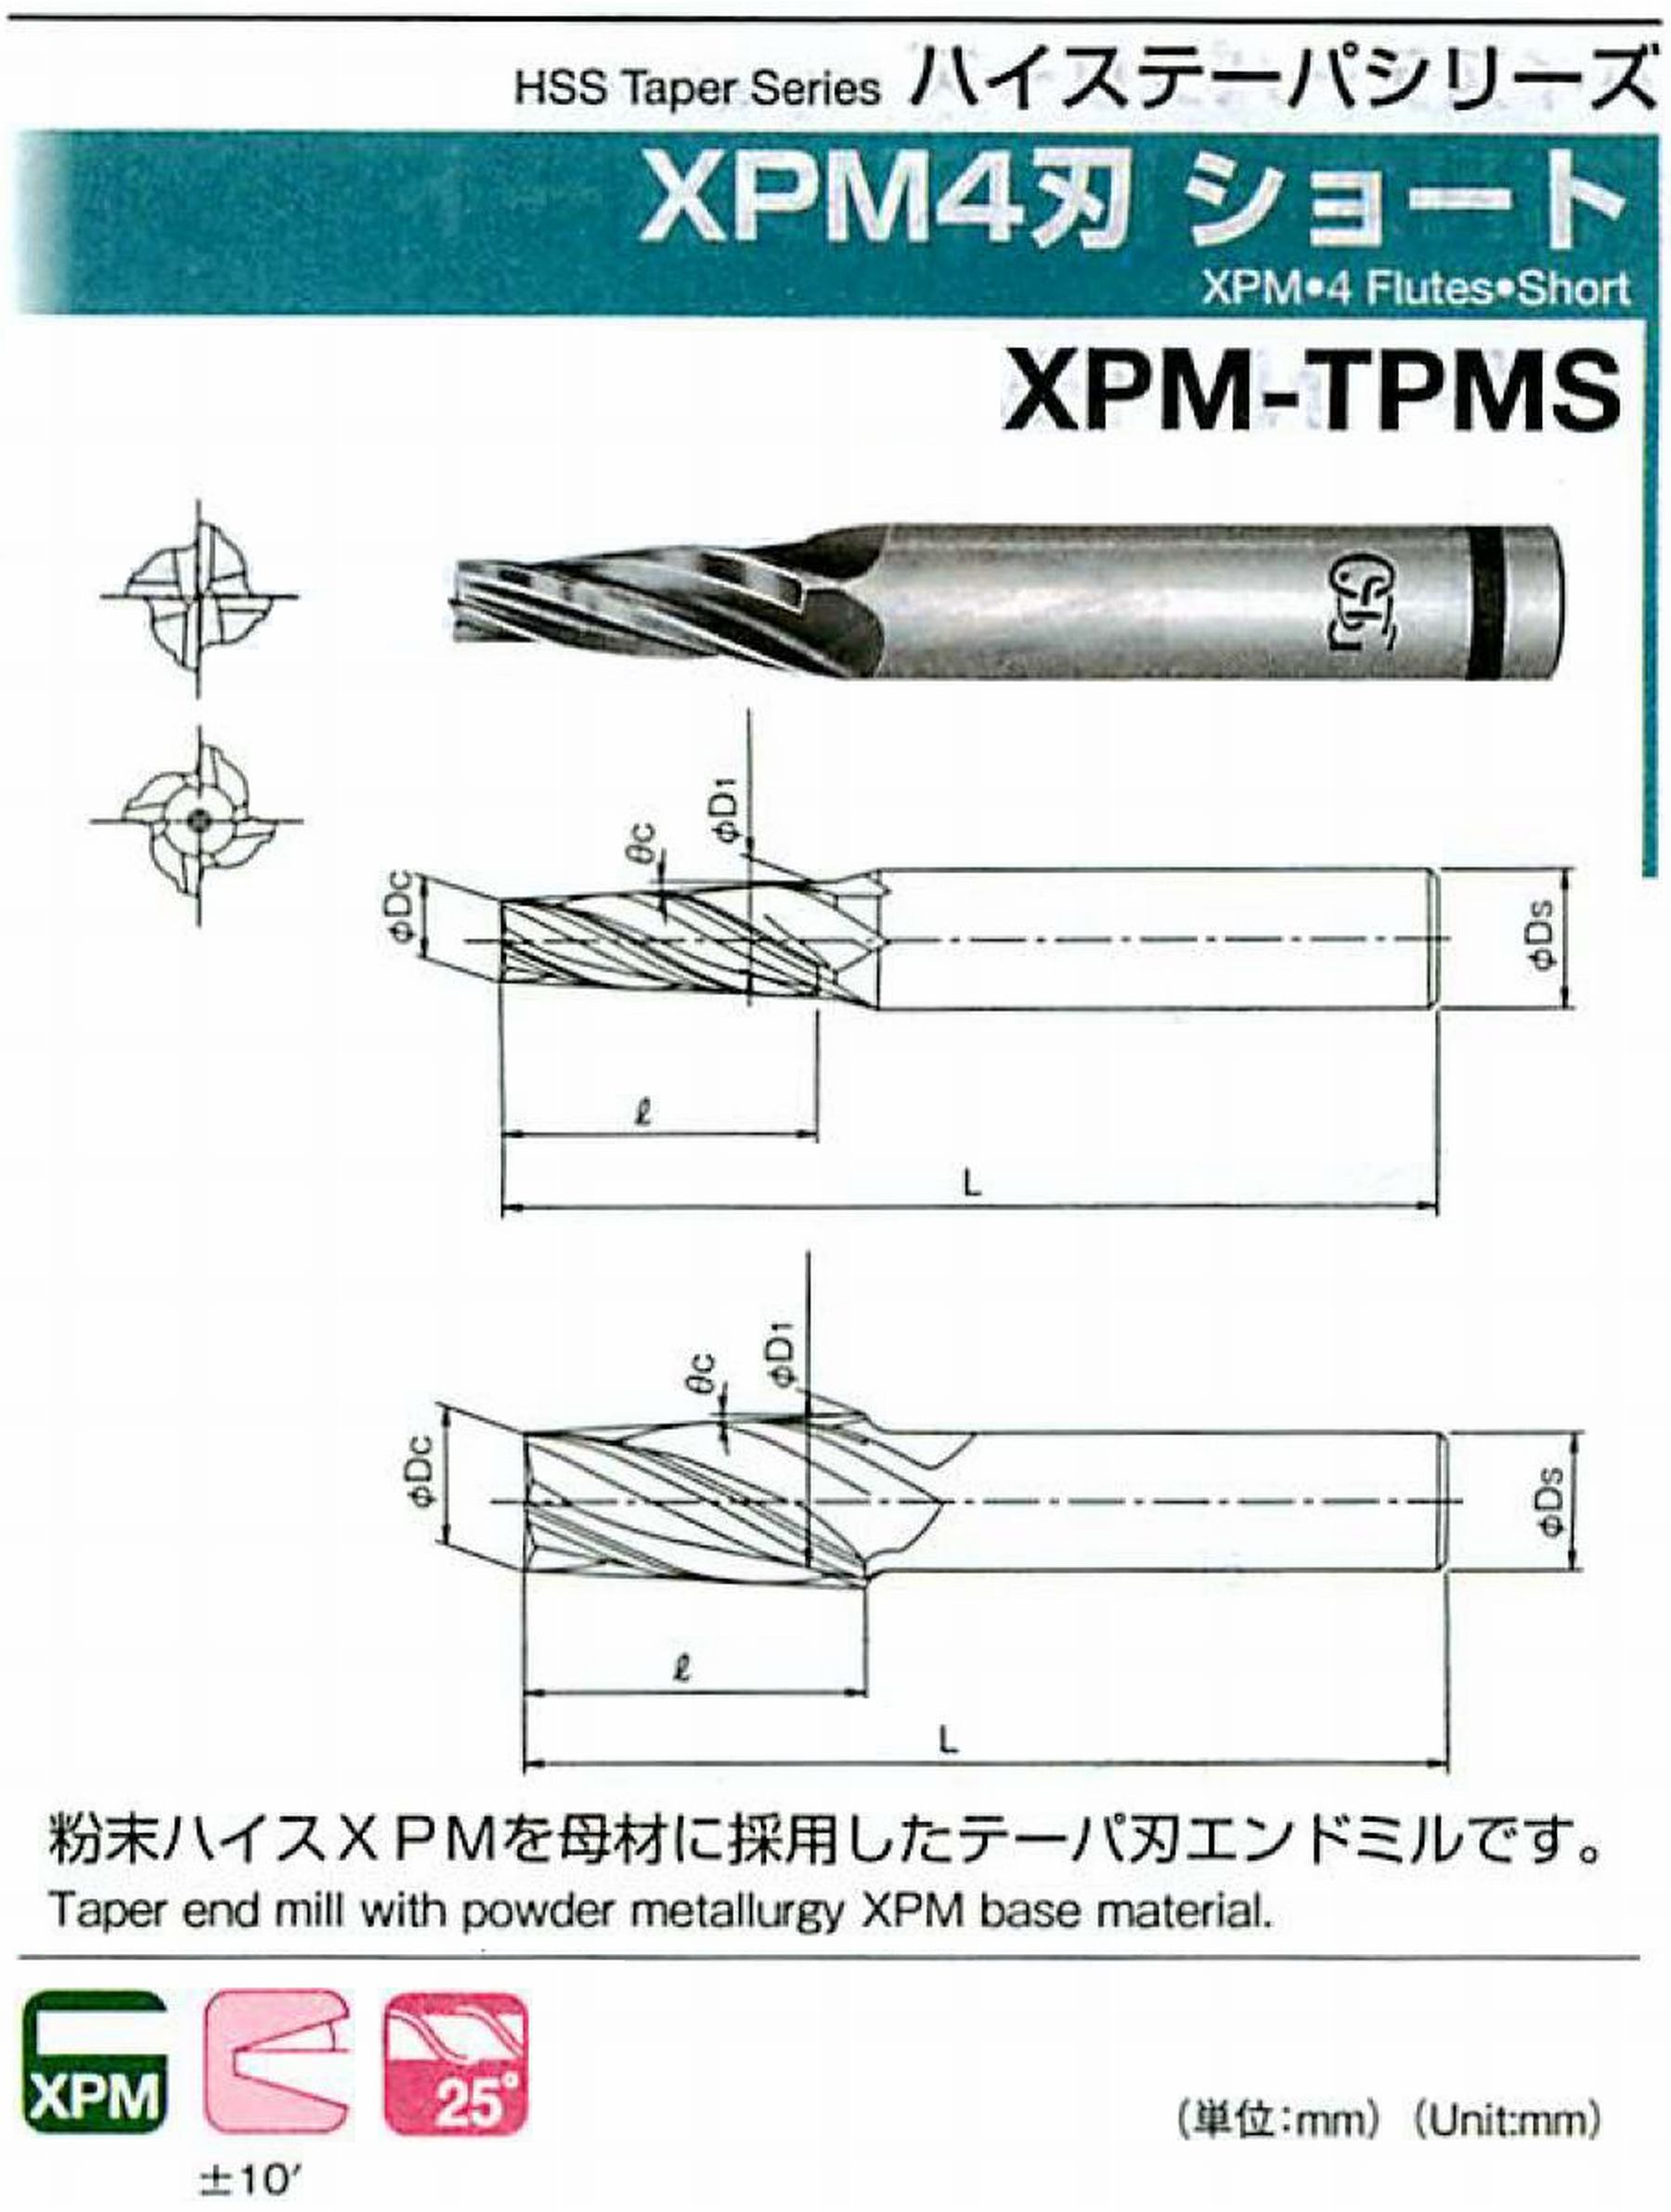 オーエスジー/OSG XPM4刃 ショート XPM-TPMS 外径×刃部テーパ半角2×1.5°全長57 刃長13 シャンク径6mm 大端径2.68